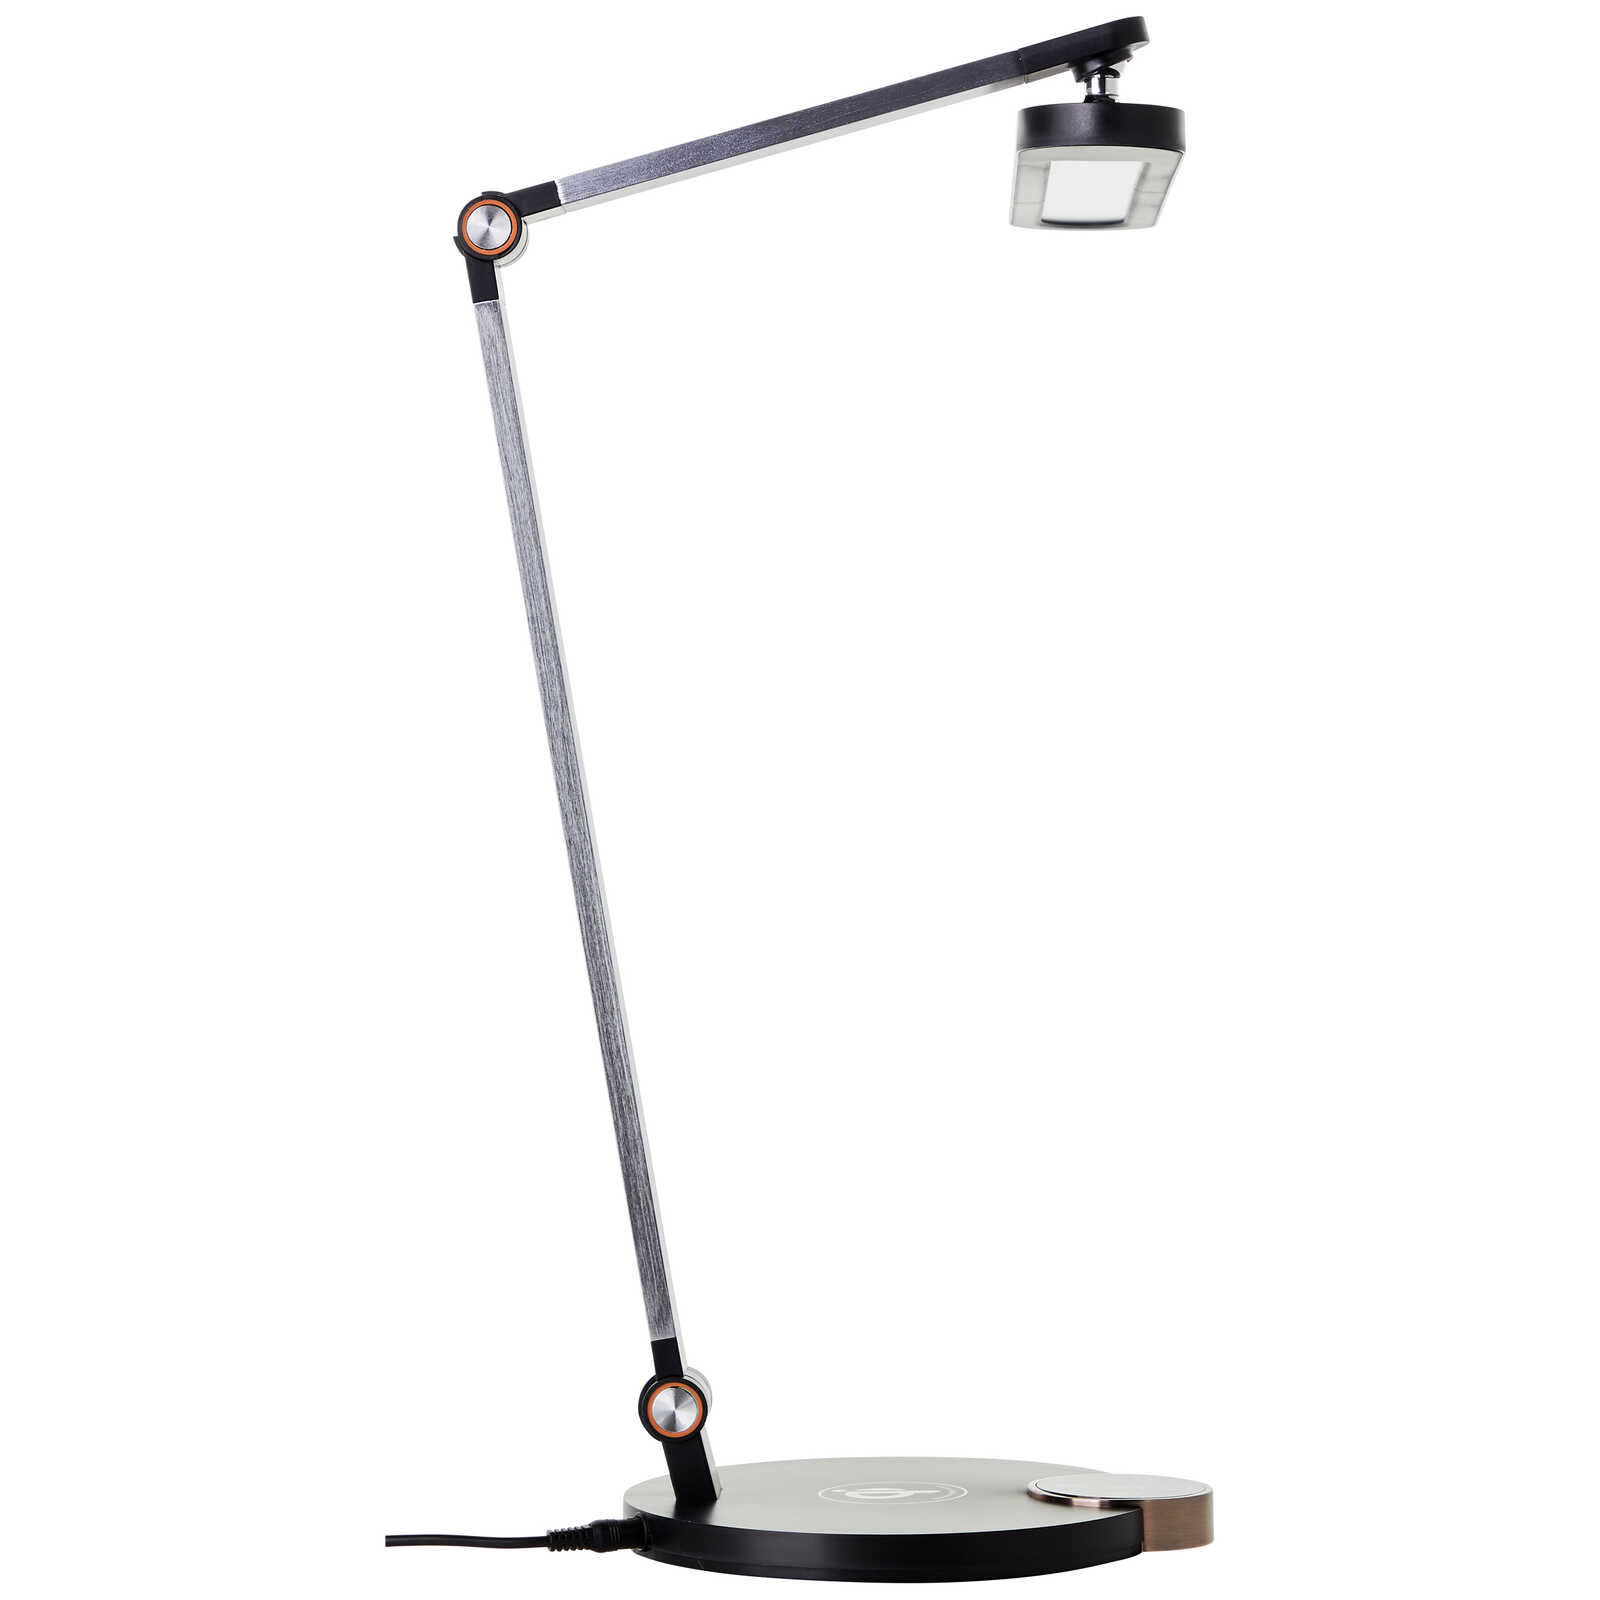             Lampe de table en métal - Magnus 1 - Noir
        